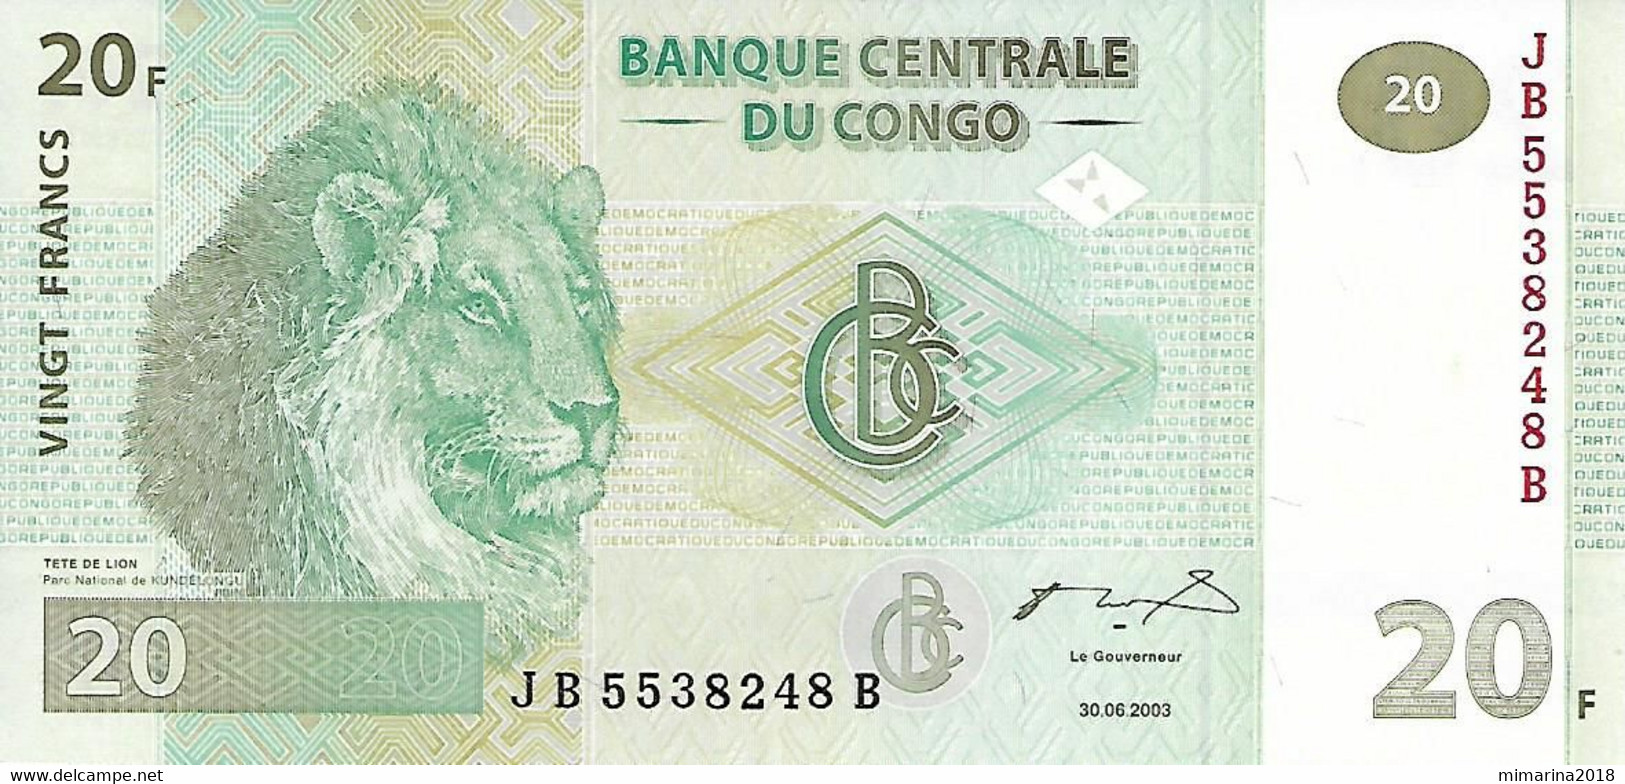 CONGO  UNC  2003  20 FRANCOS  P94 - República Democrática Del Congo & Zaire